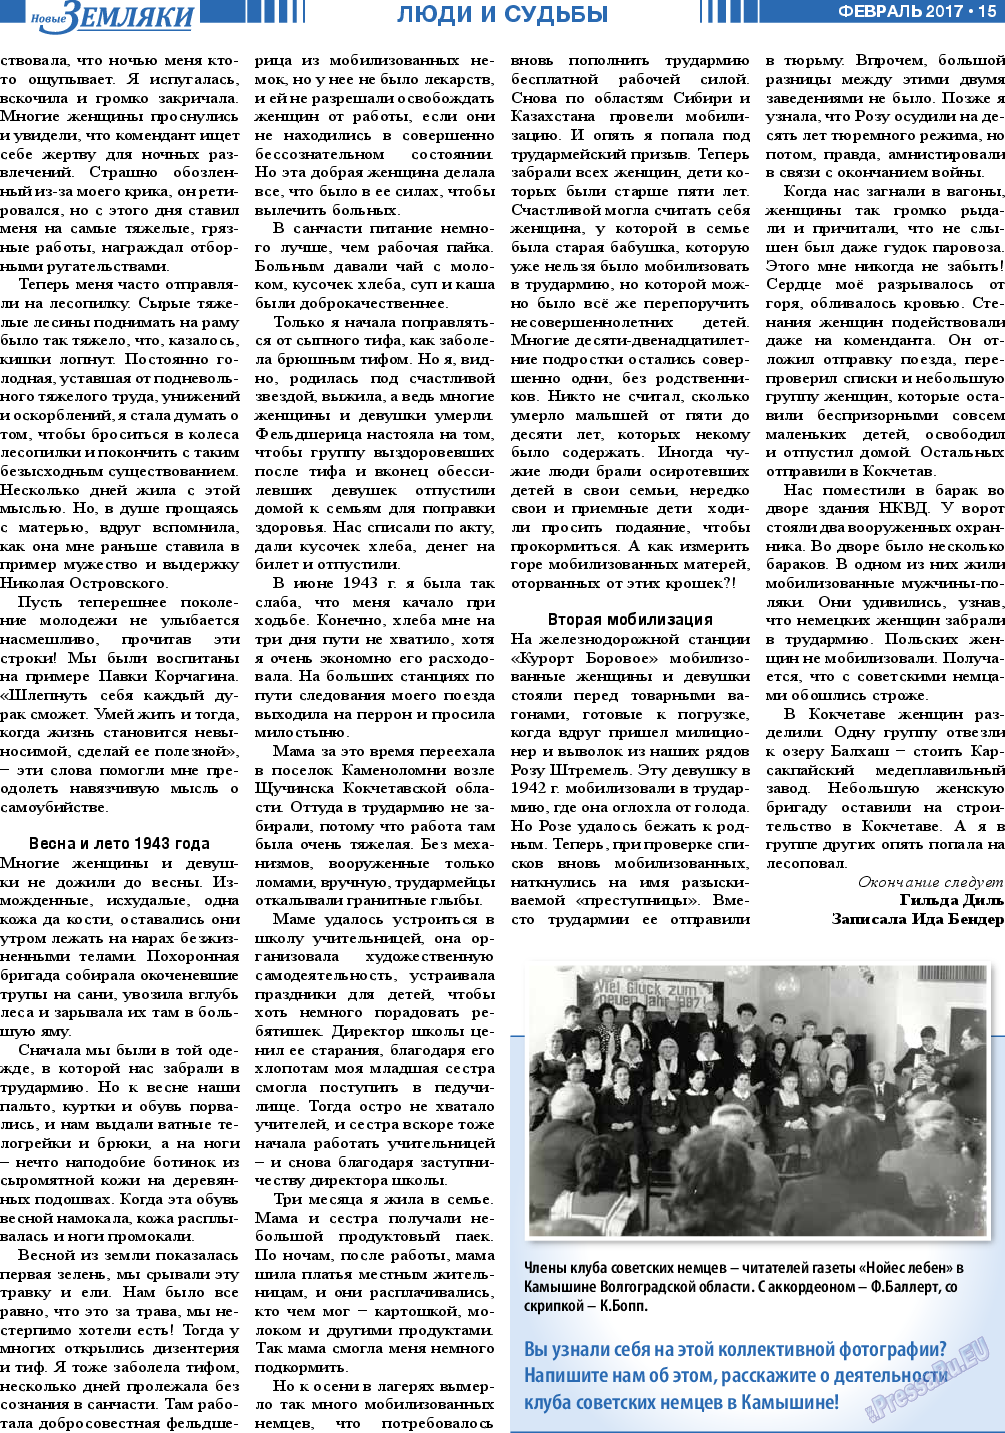 Новые Земляки, газета. 2017 №2 стр.15